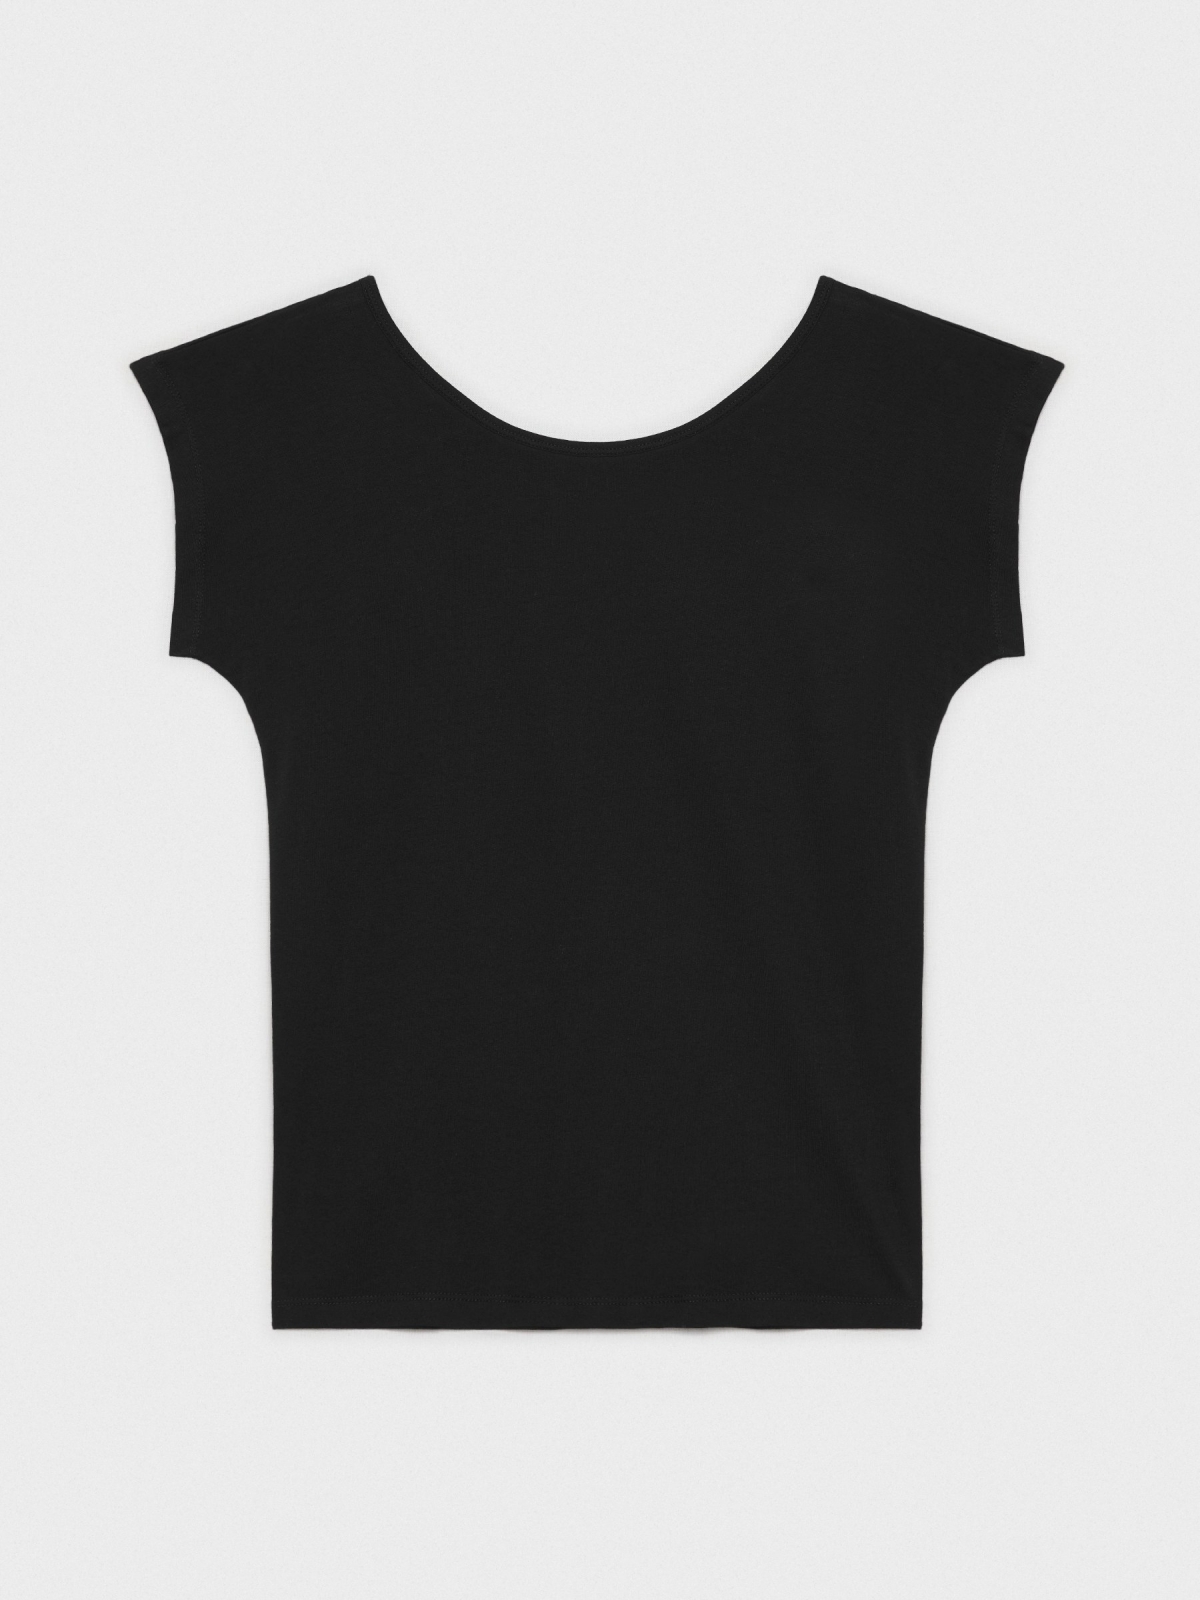  Camiseta escote espalda negro